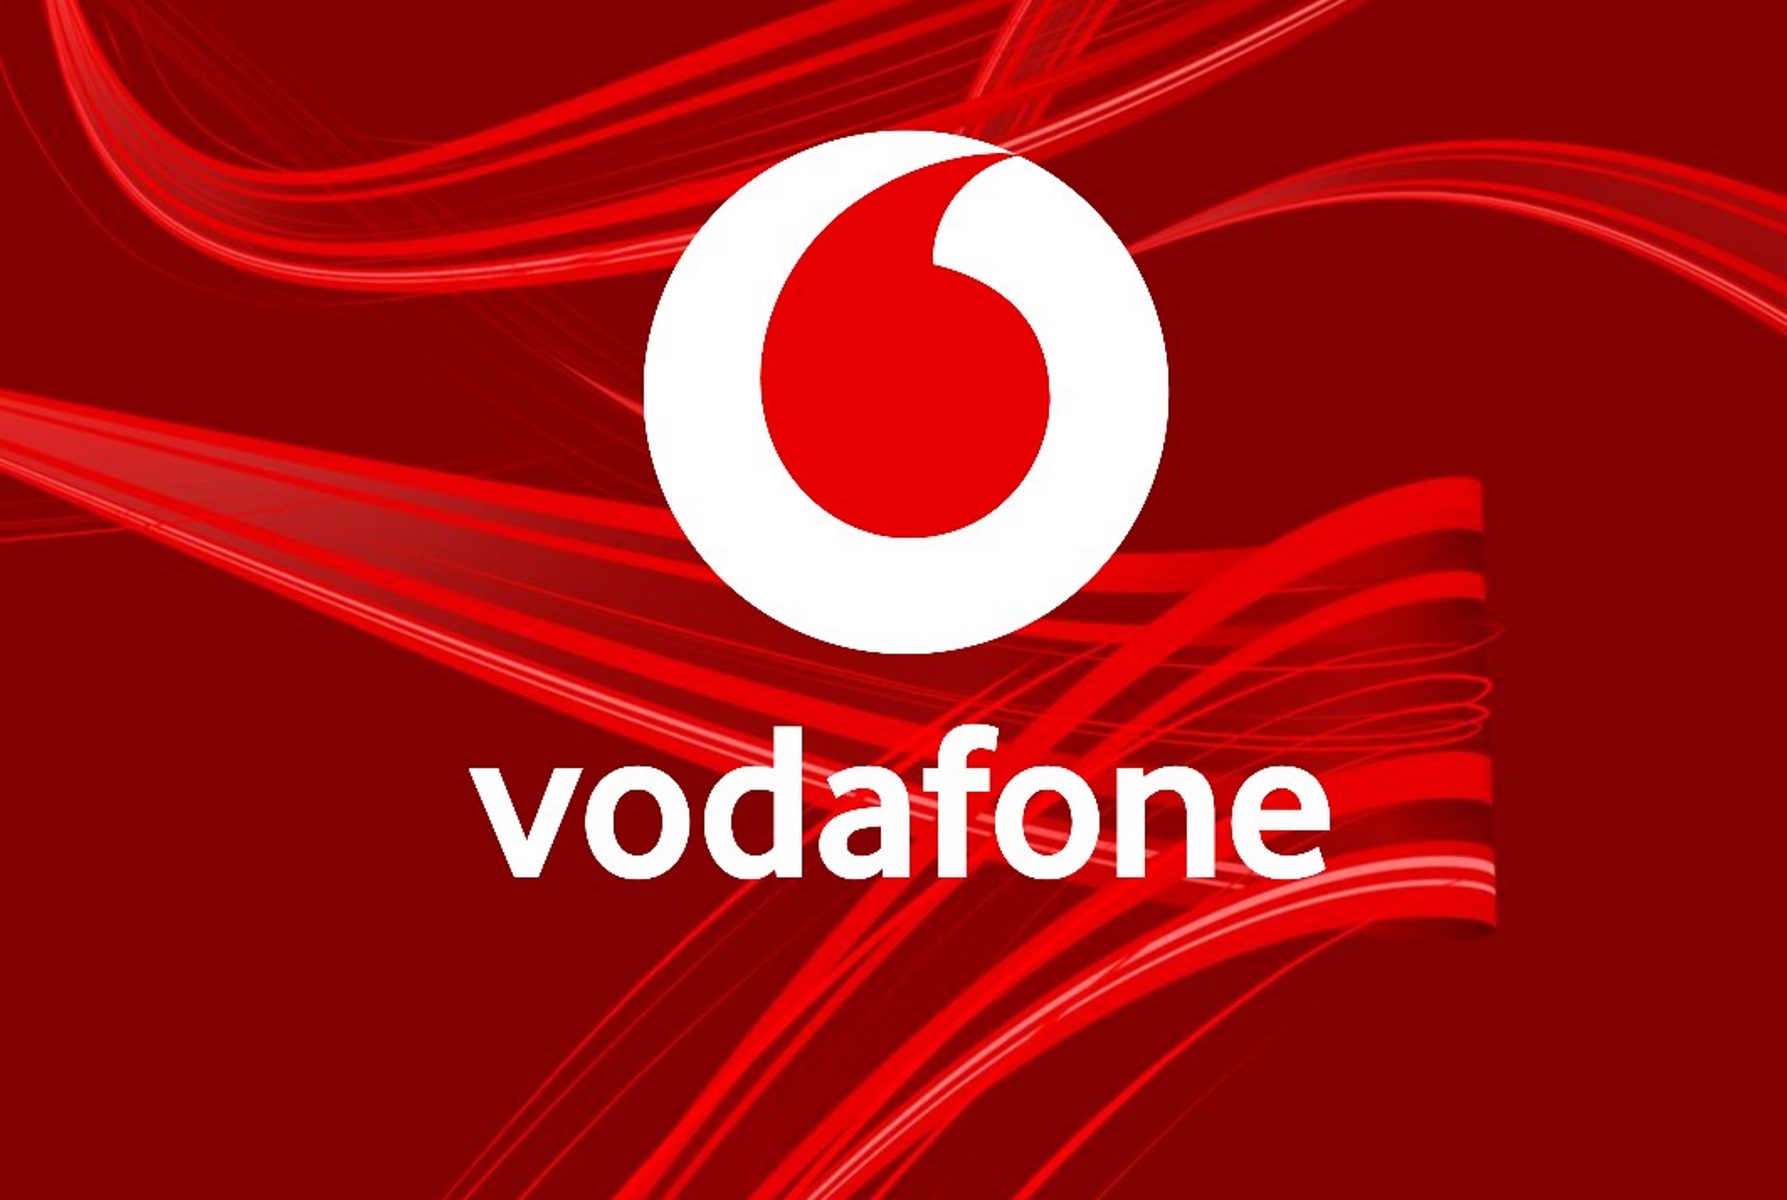 Η Vodafone στηρίζει τους συνδρομητές της σε Αττική, Εύβοια και Μεσσηνία